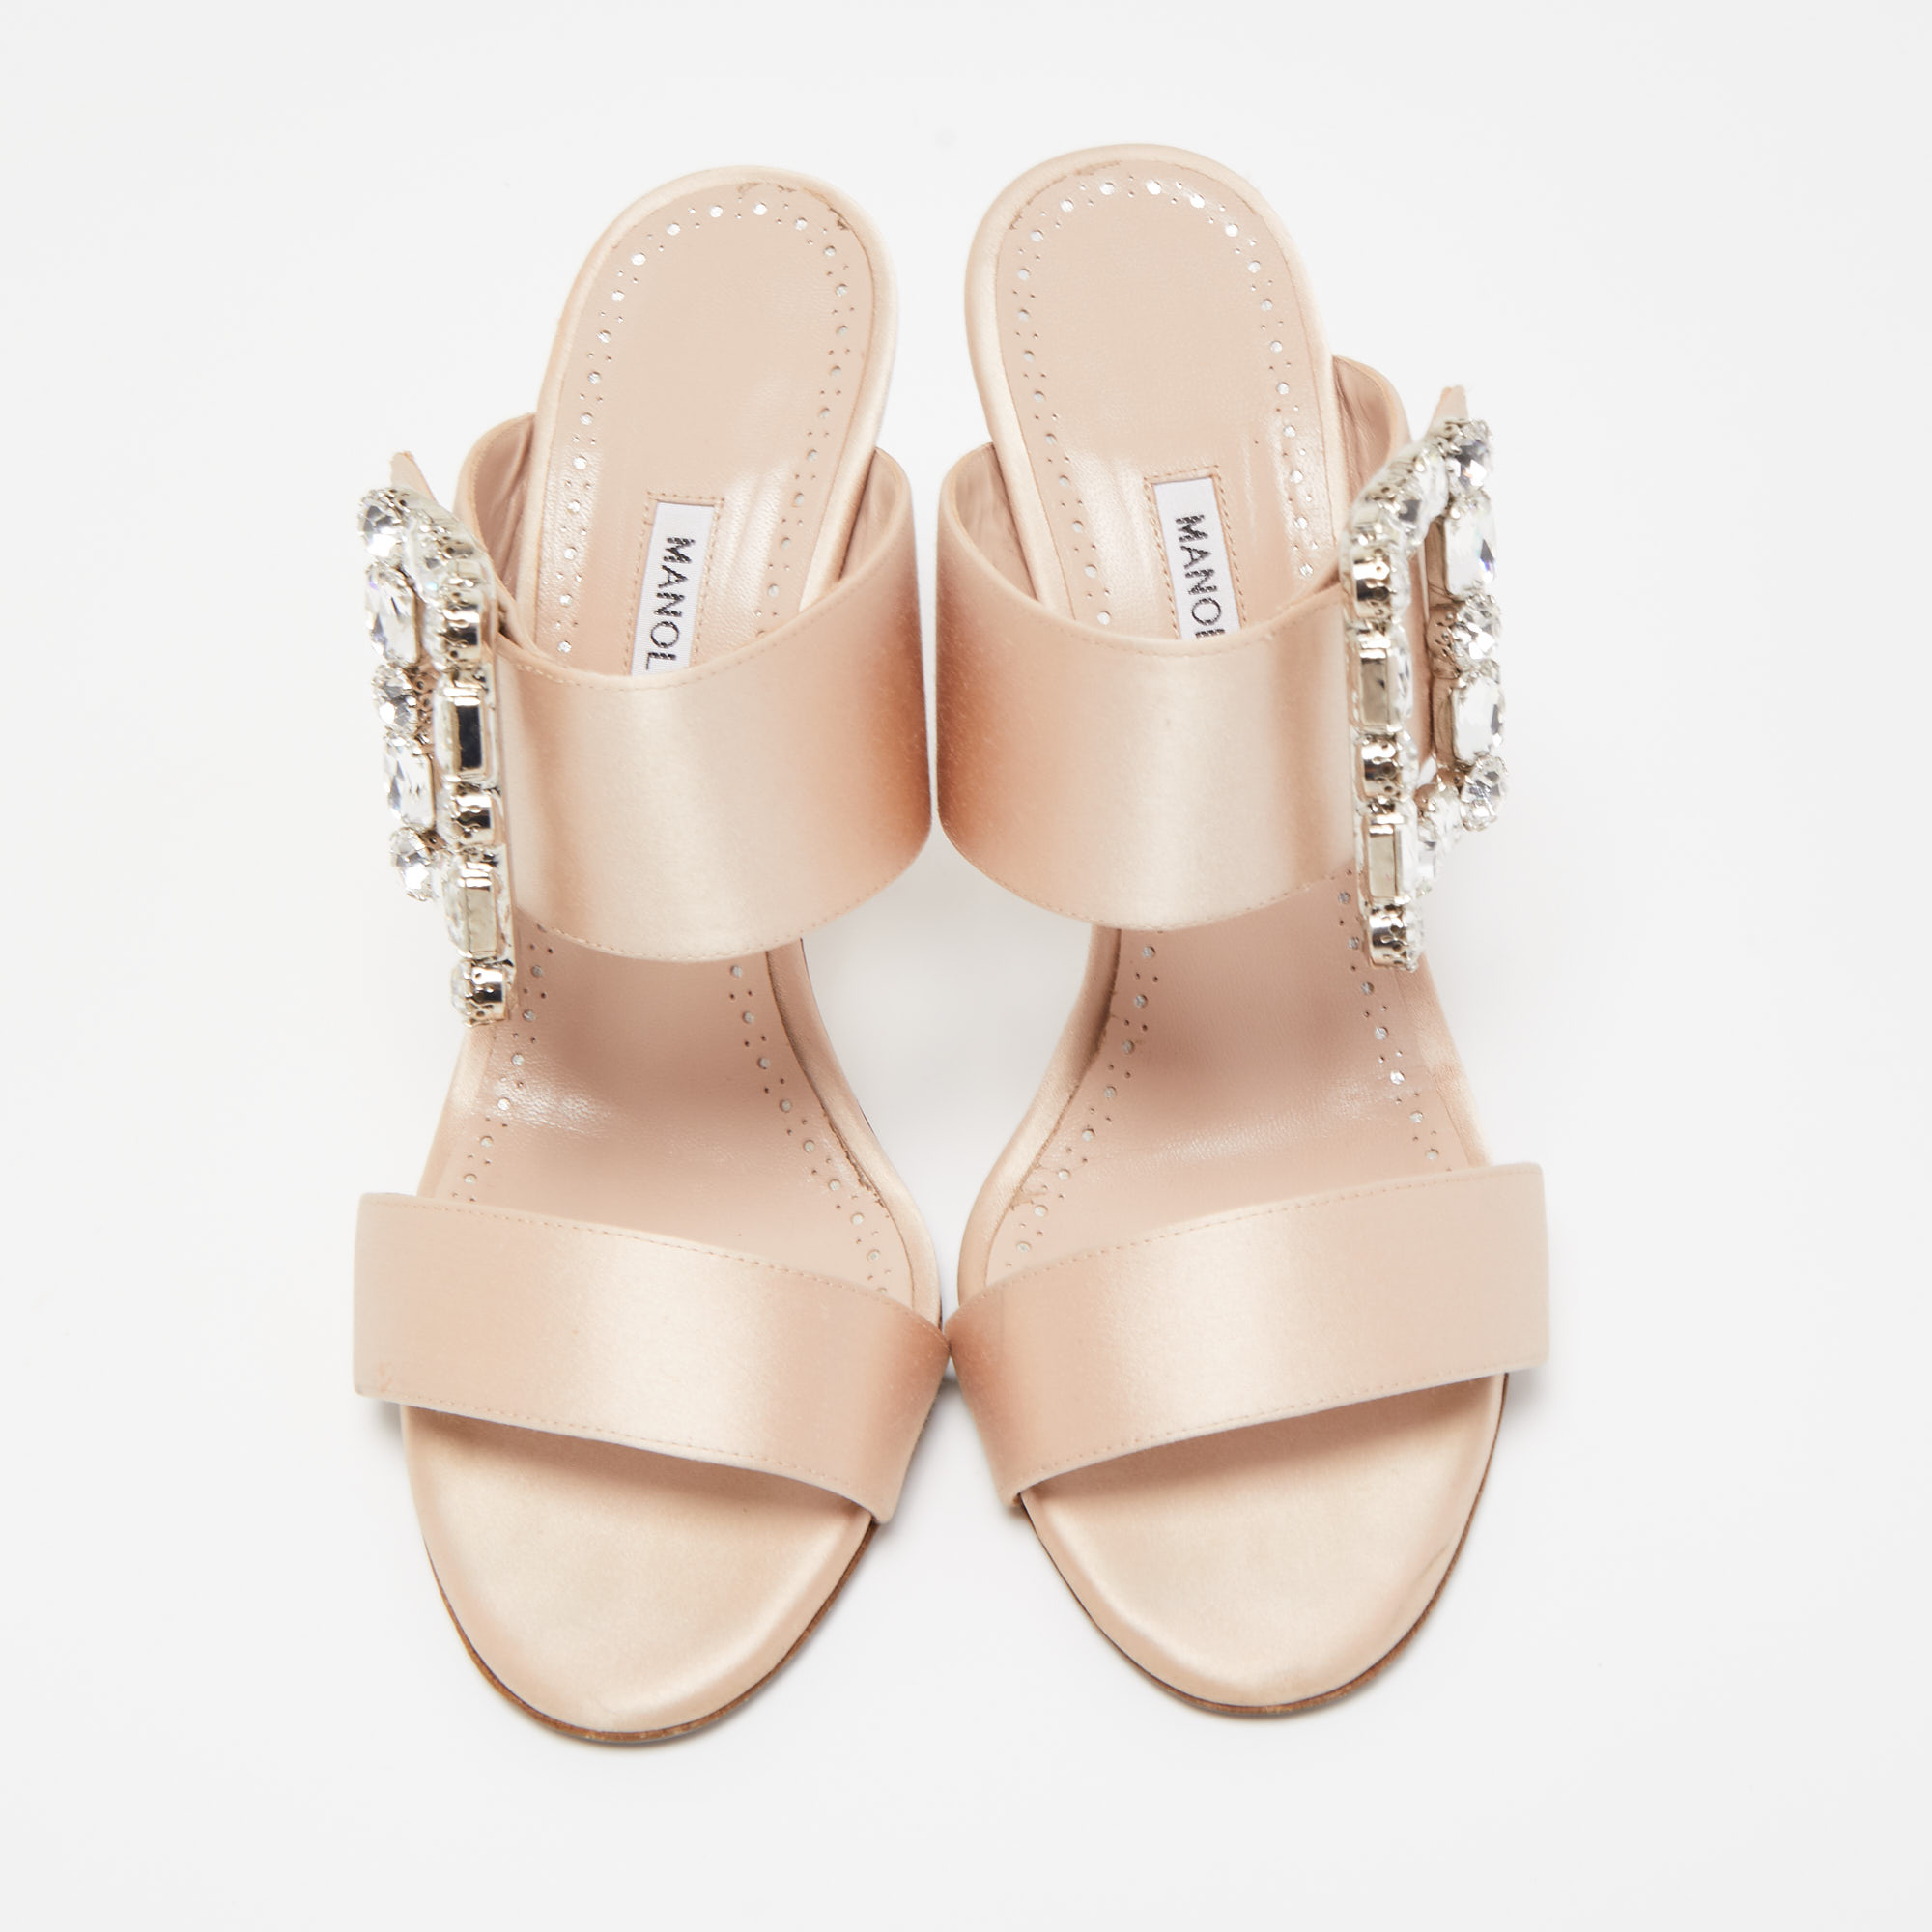 Manolo Blahnik Light Pink Satin Crystal Embellished Gable Sandals Size 38